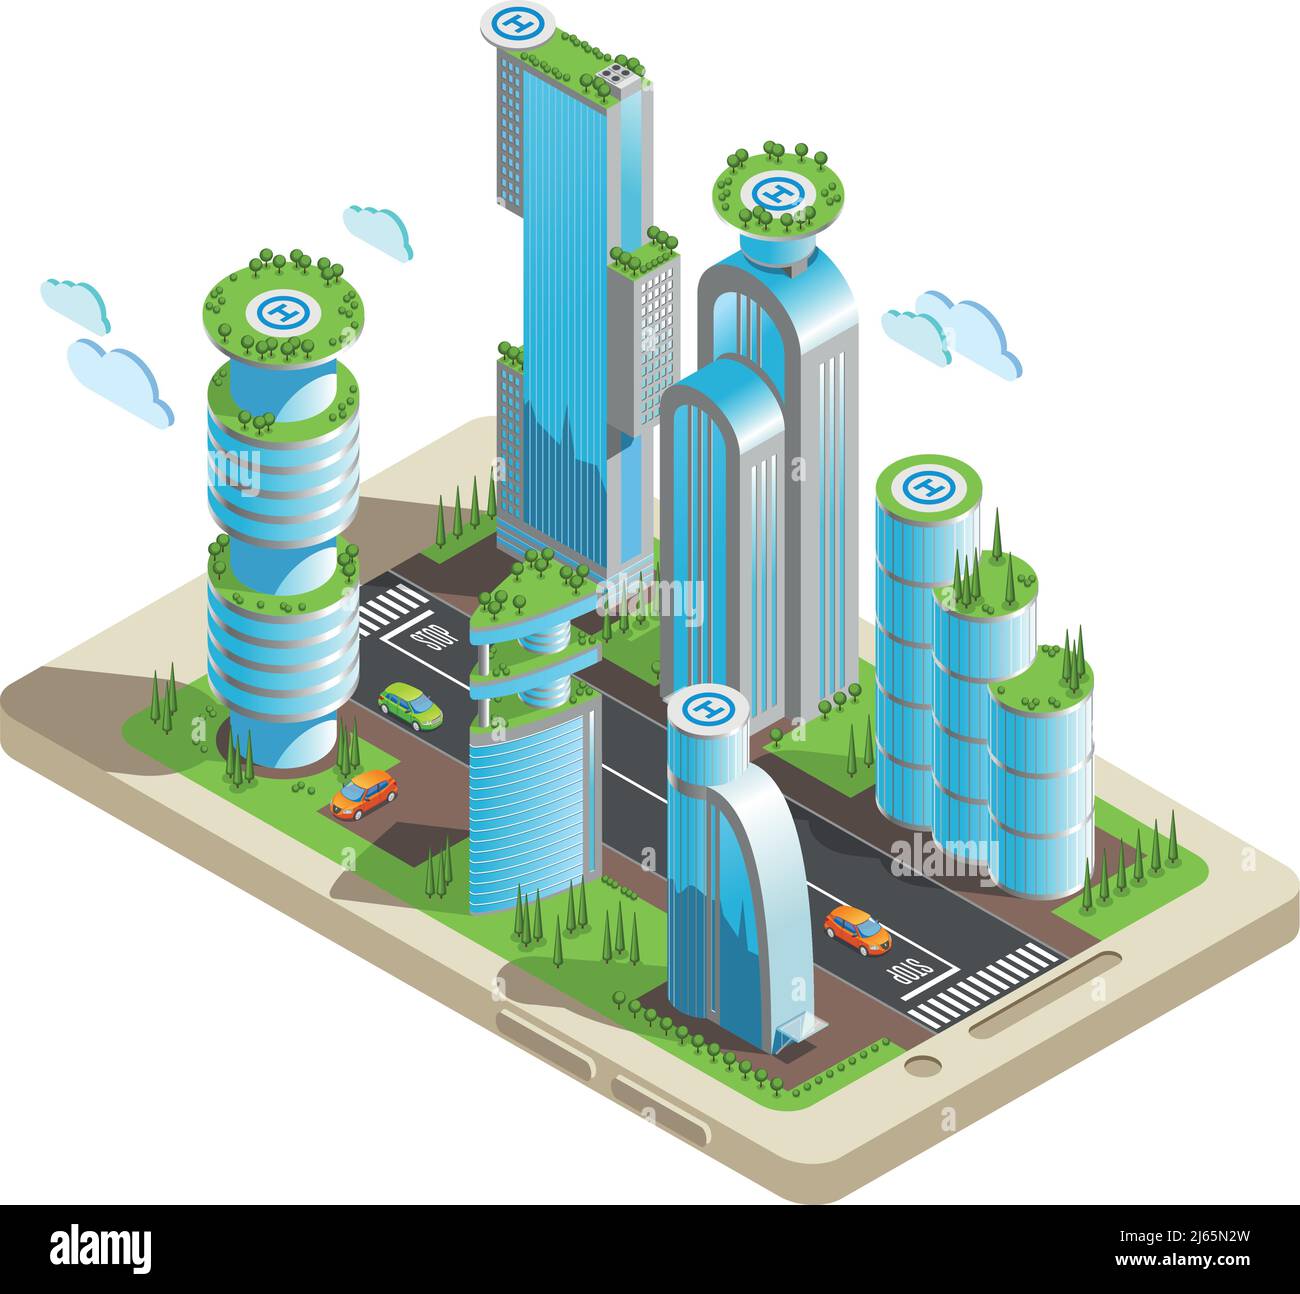 Isometrische futuristische Wolkenkratzer farbige Komposition Teil der Stadt mit Wolkenkratzer im 3D Stil auf dem Smartphone-Bildschirm Vektor Illustratio Stock Vektor